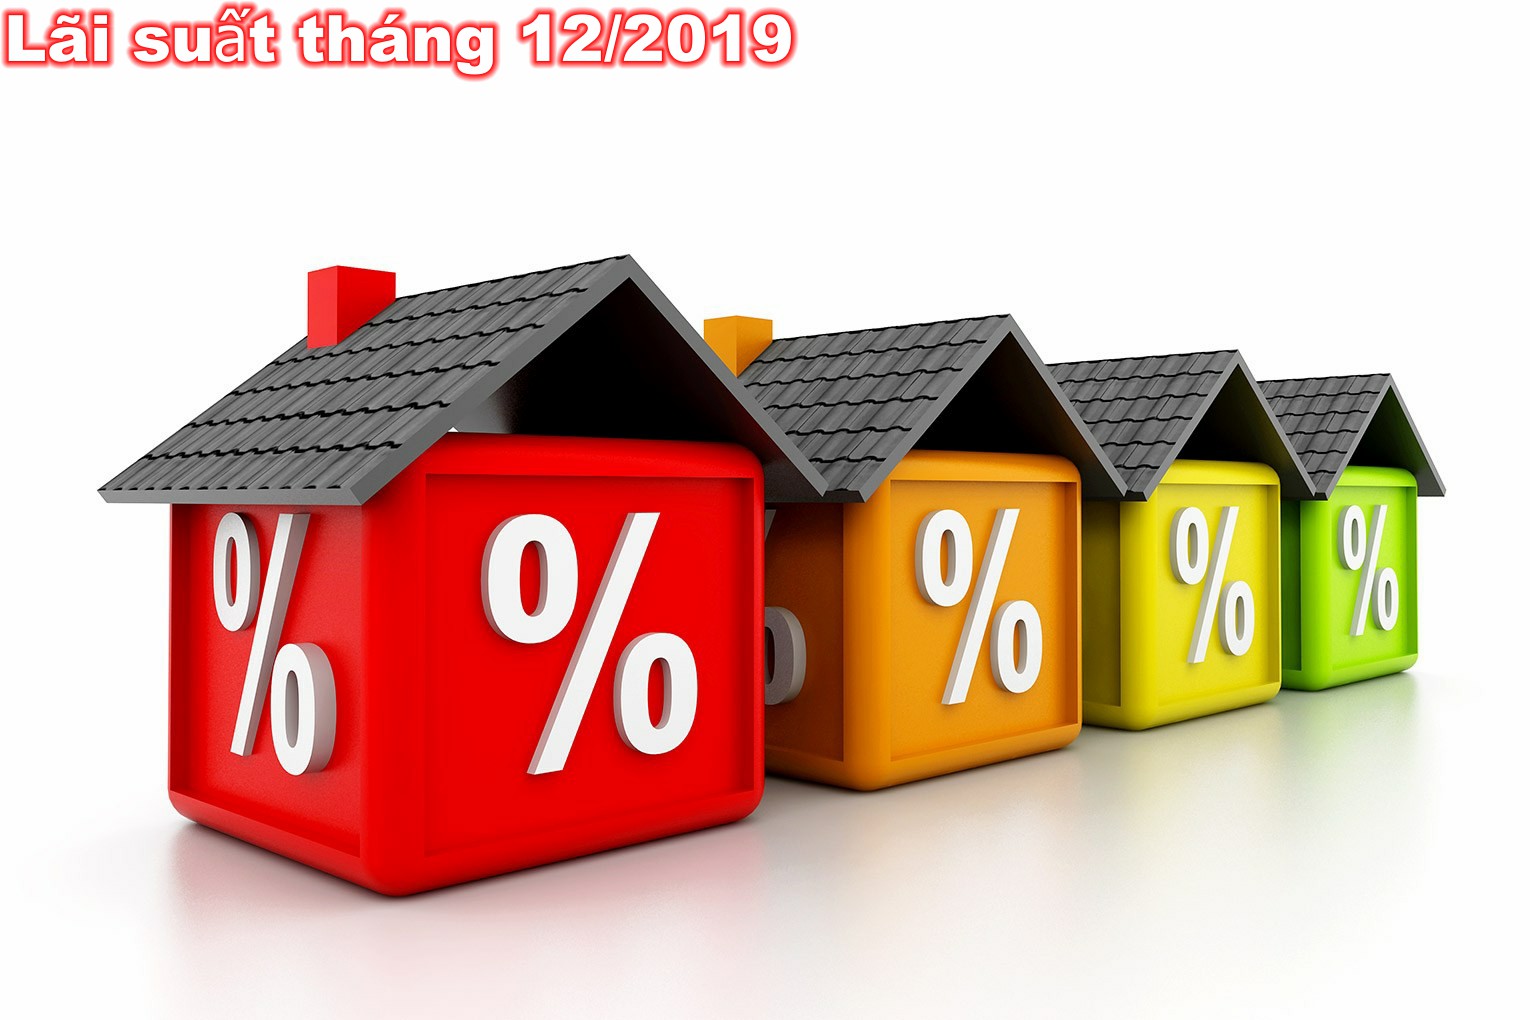 Bảng lãi suất cho vay ưu đãi mua nhà của Ngân hàng trong tháng 12/2019 laisuat1 1575378728